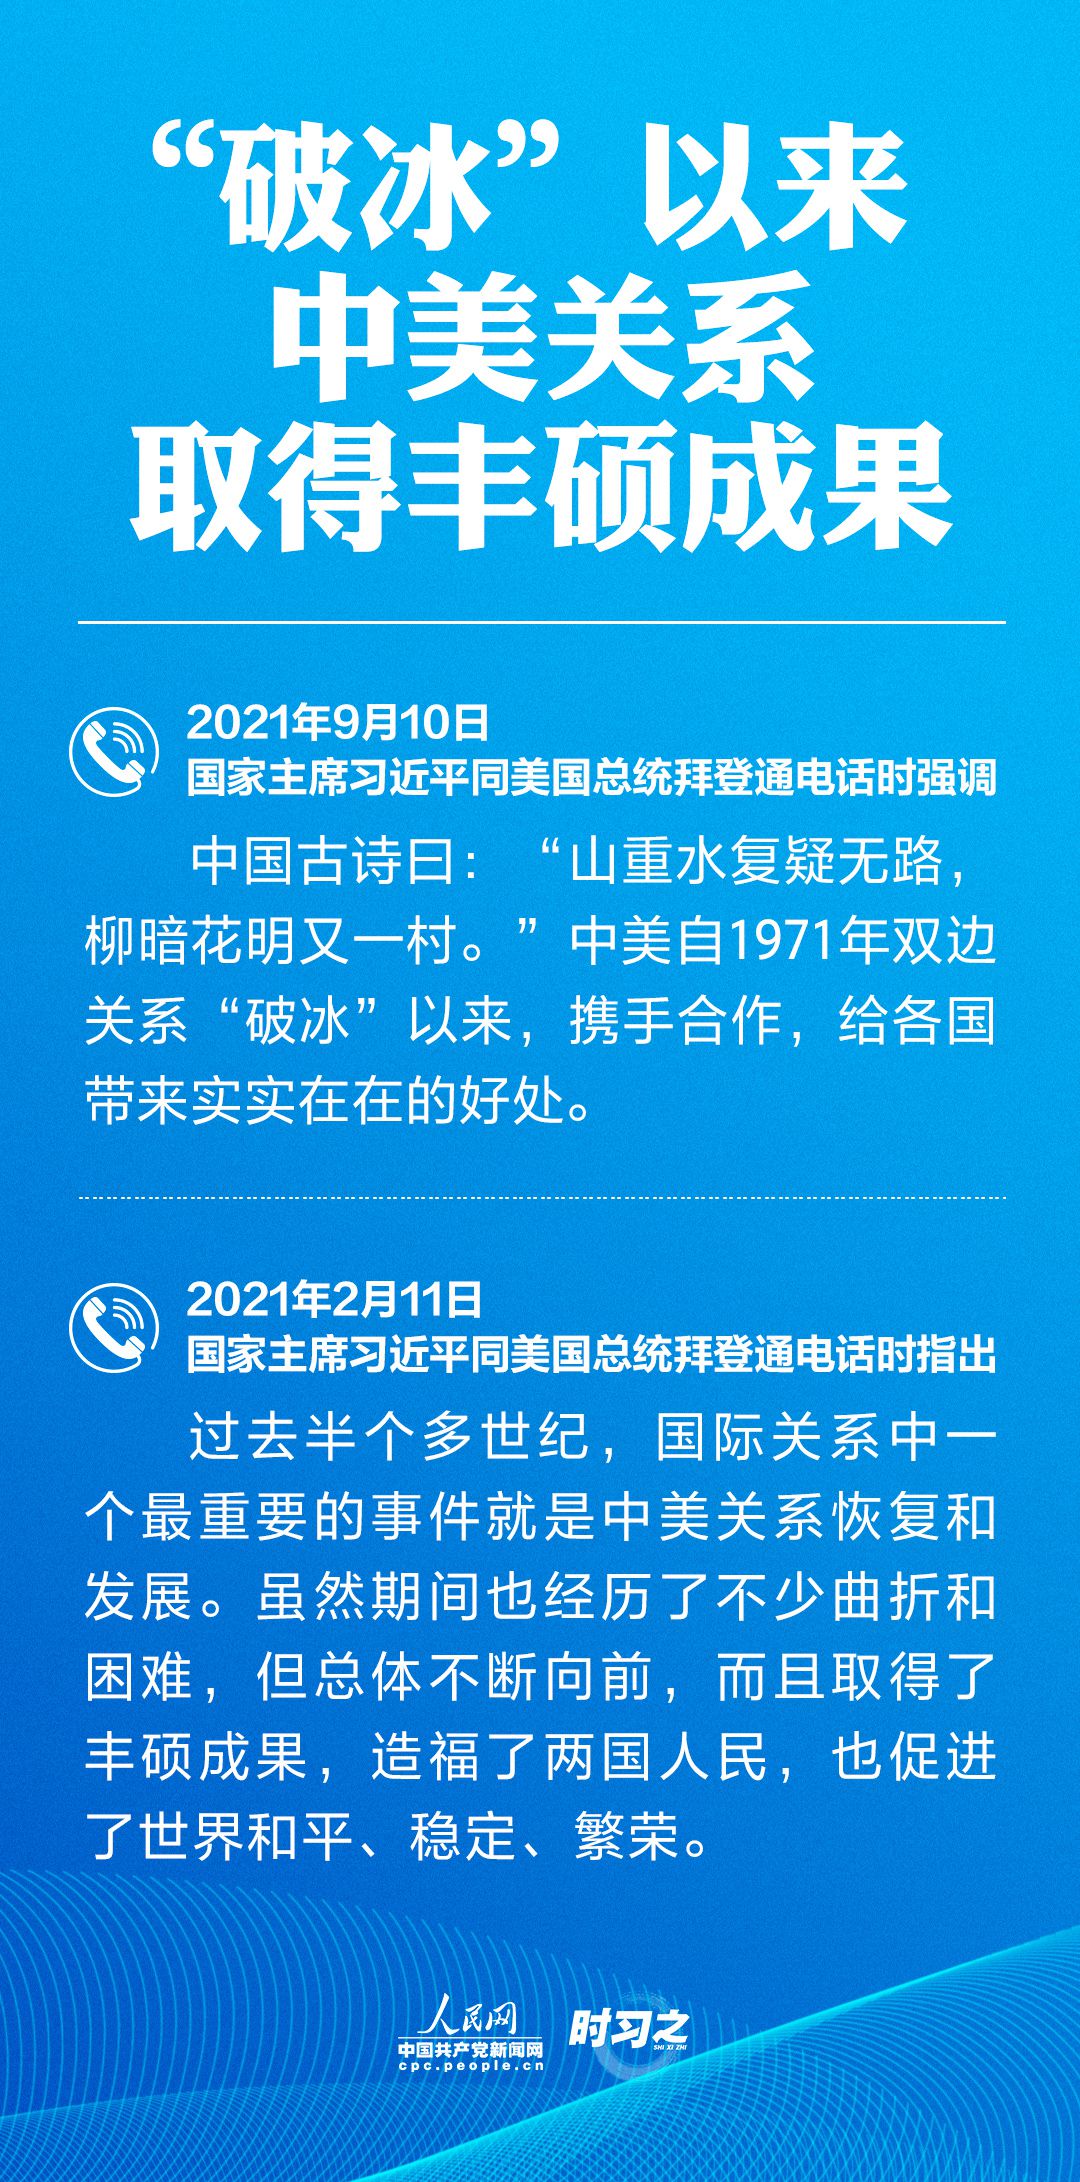 习近平同拜登通电话 人民网-中国共产党新闻网1.jpg